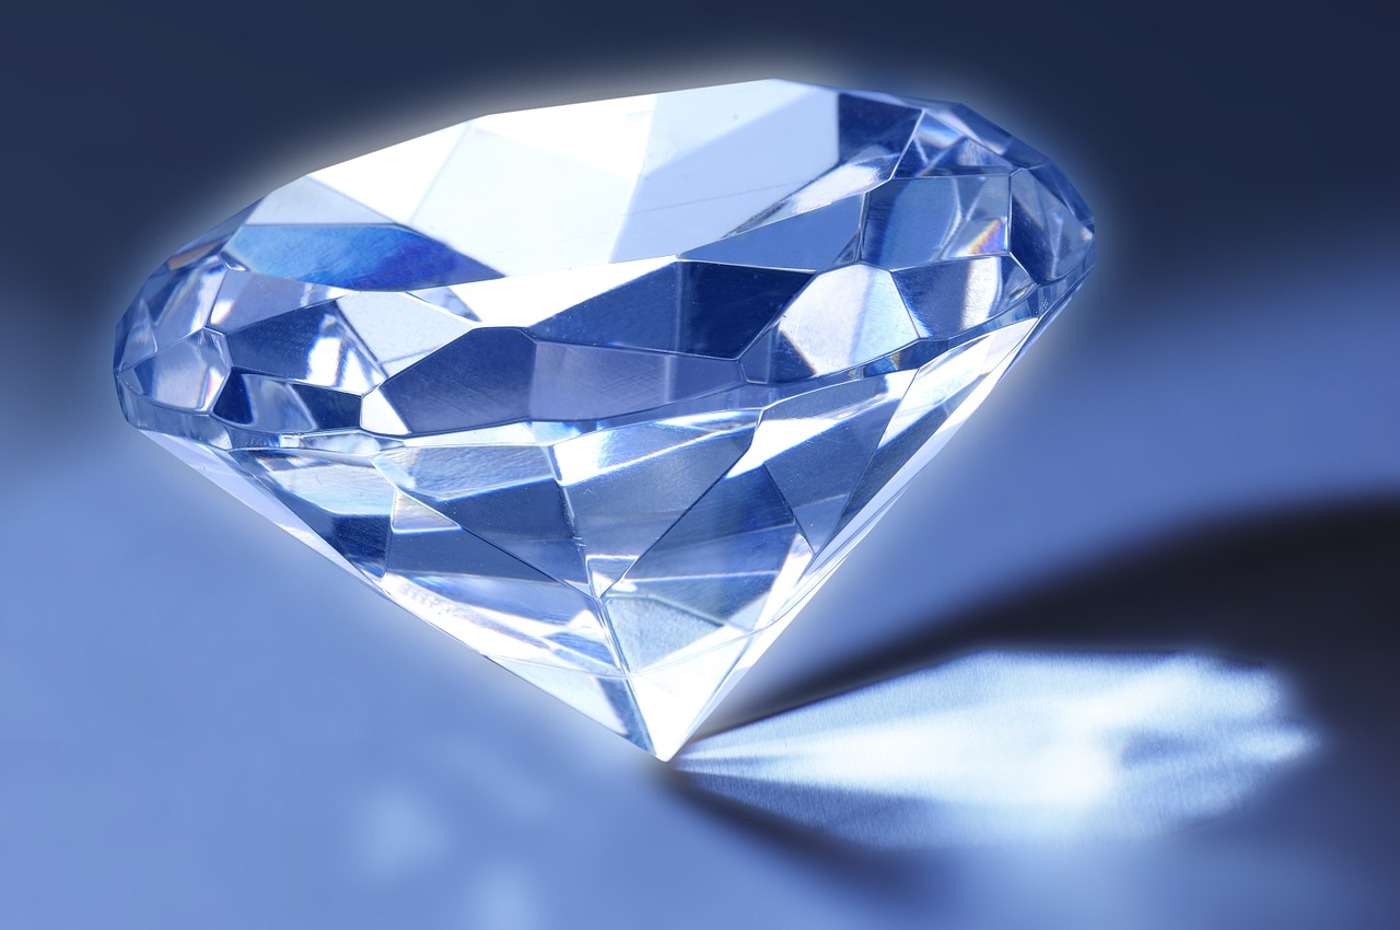 RÃ©sultat de recherche d'images pour "diamant"